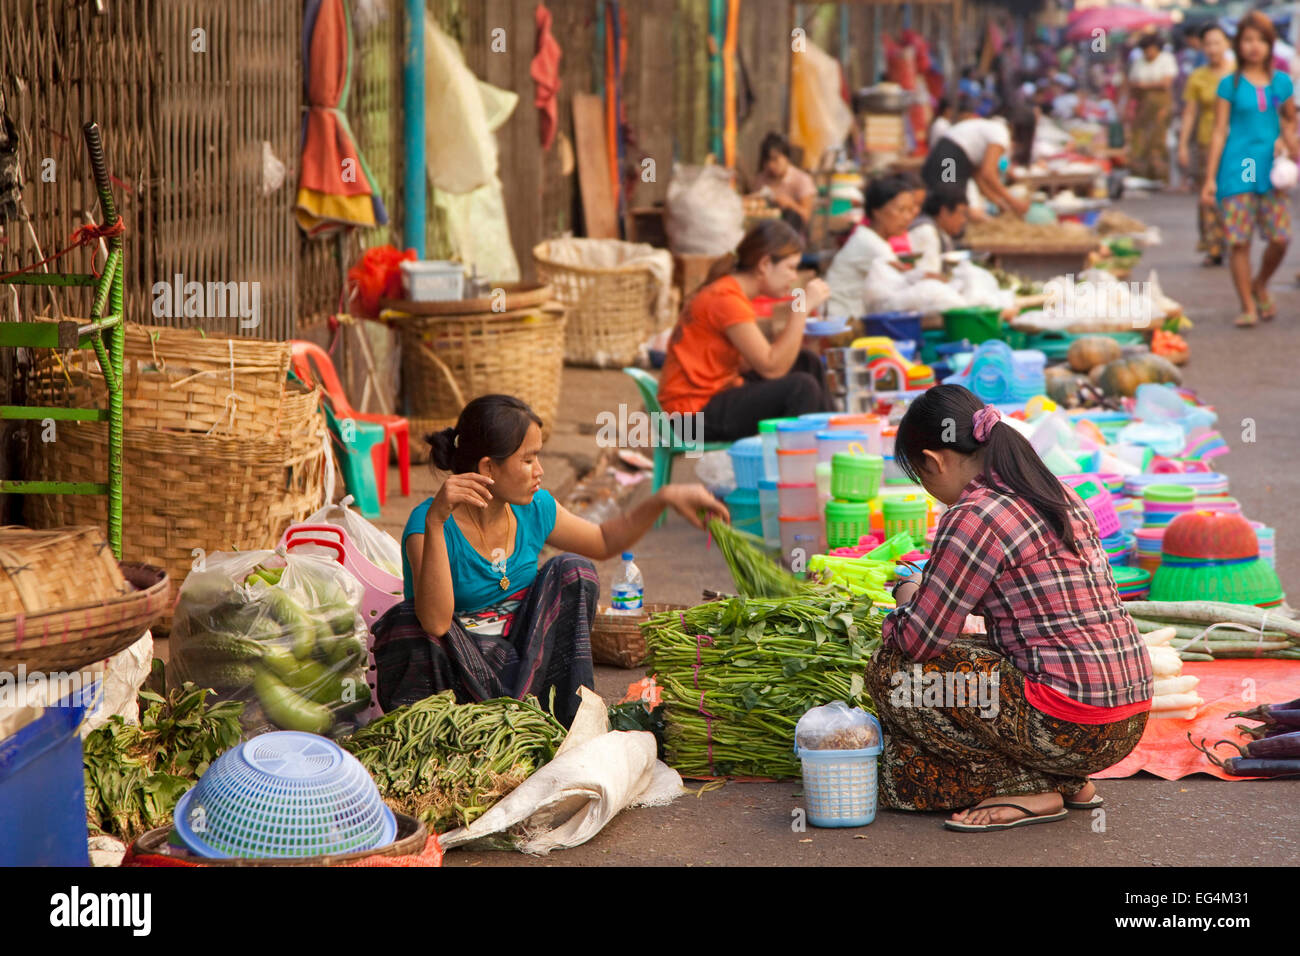 Femmina birmano venditori ambulanti che vendono alimenti e merci sul terreno al mercato di Yangon / Rangoon, Myanmar / Birmania Foto Stock